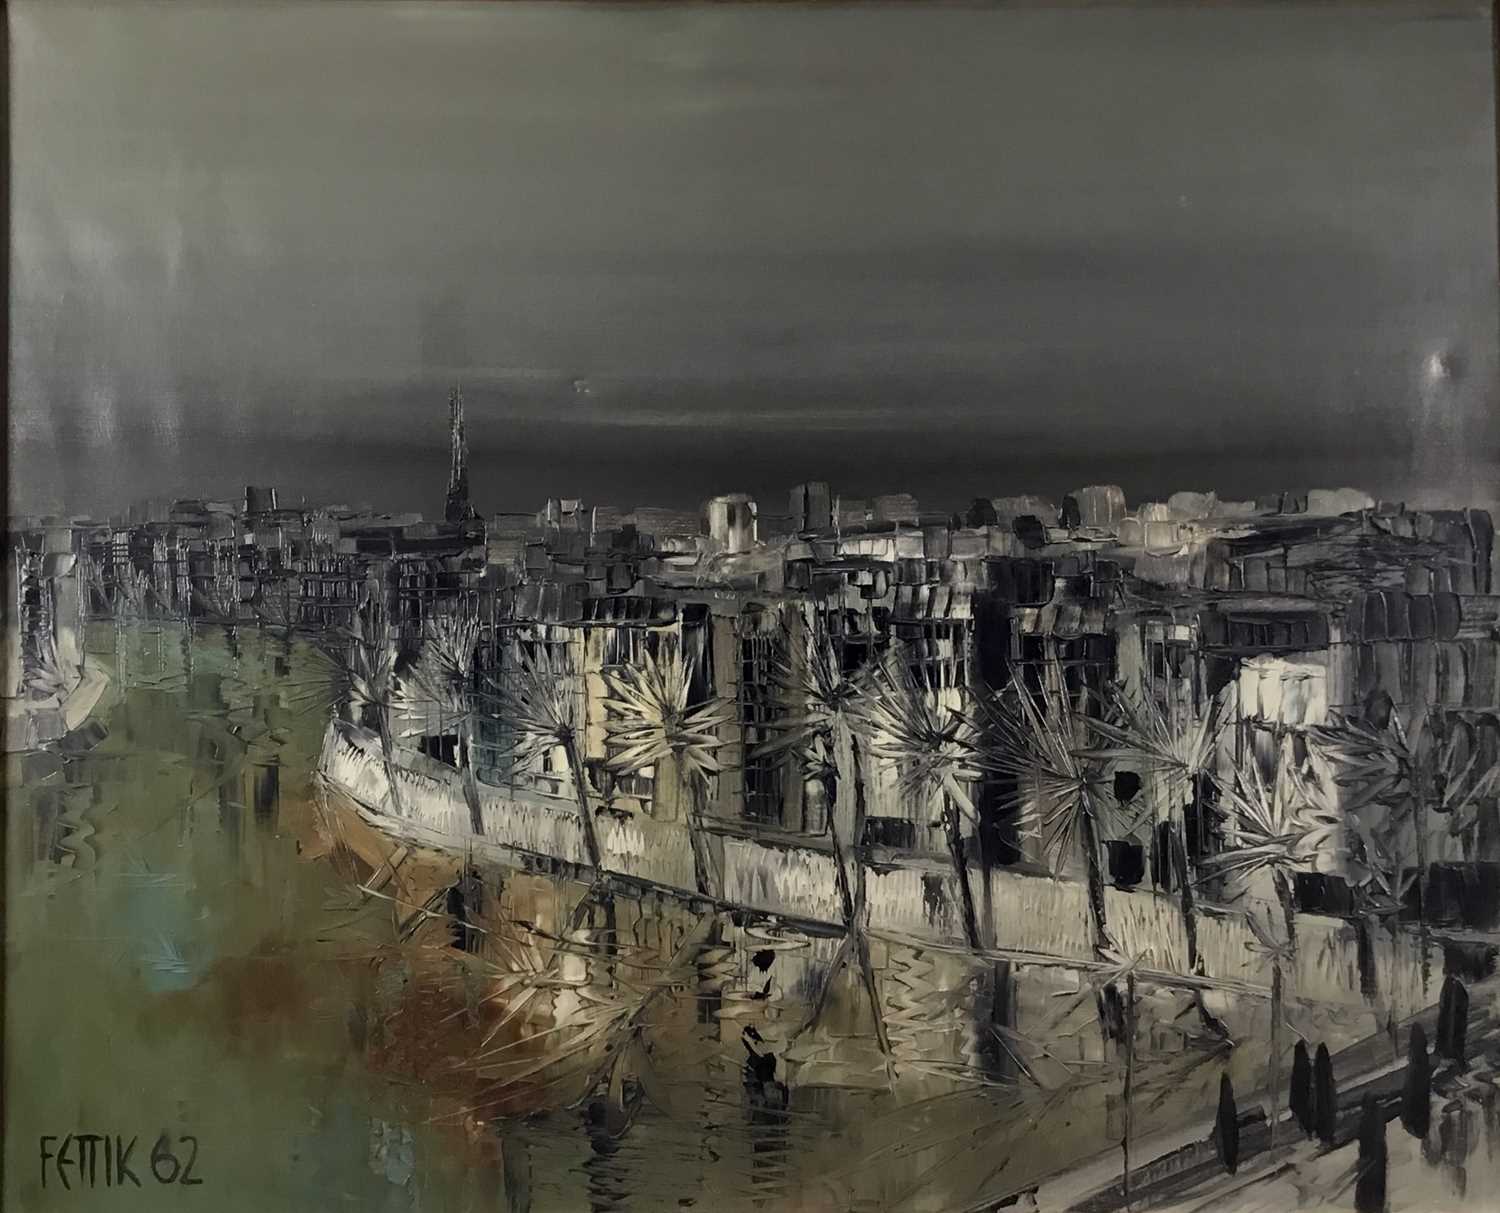 Lot 171 - Fettik, 1960s oil on canvas - 'Quai D'Orsay Seine, Paris', signed, titled verso, 81cm x 100cm, framed